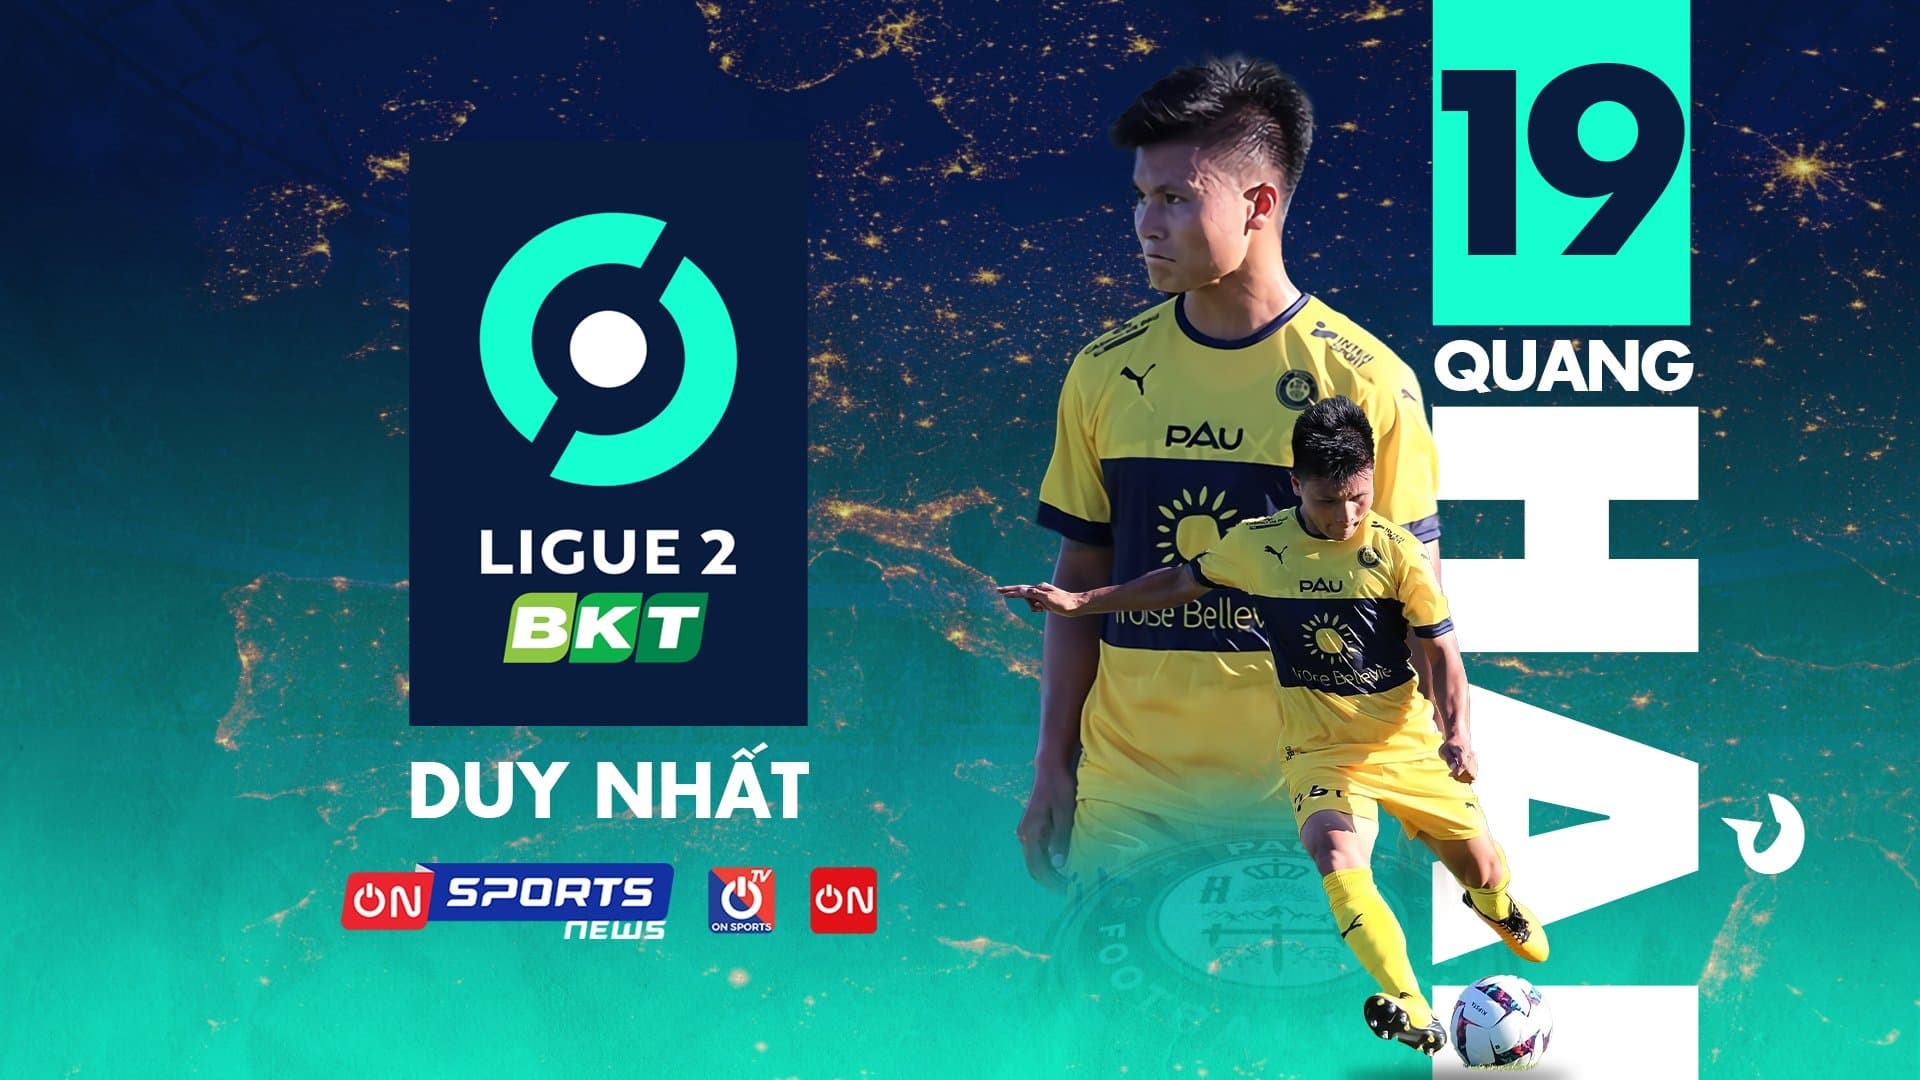 Đón xem trọn vẹn các trận đấu của Pau FC tại Ligue 2 trên ứng dụng VTVcab ON, ON Sports TV